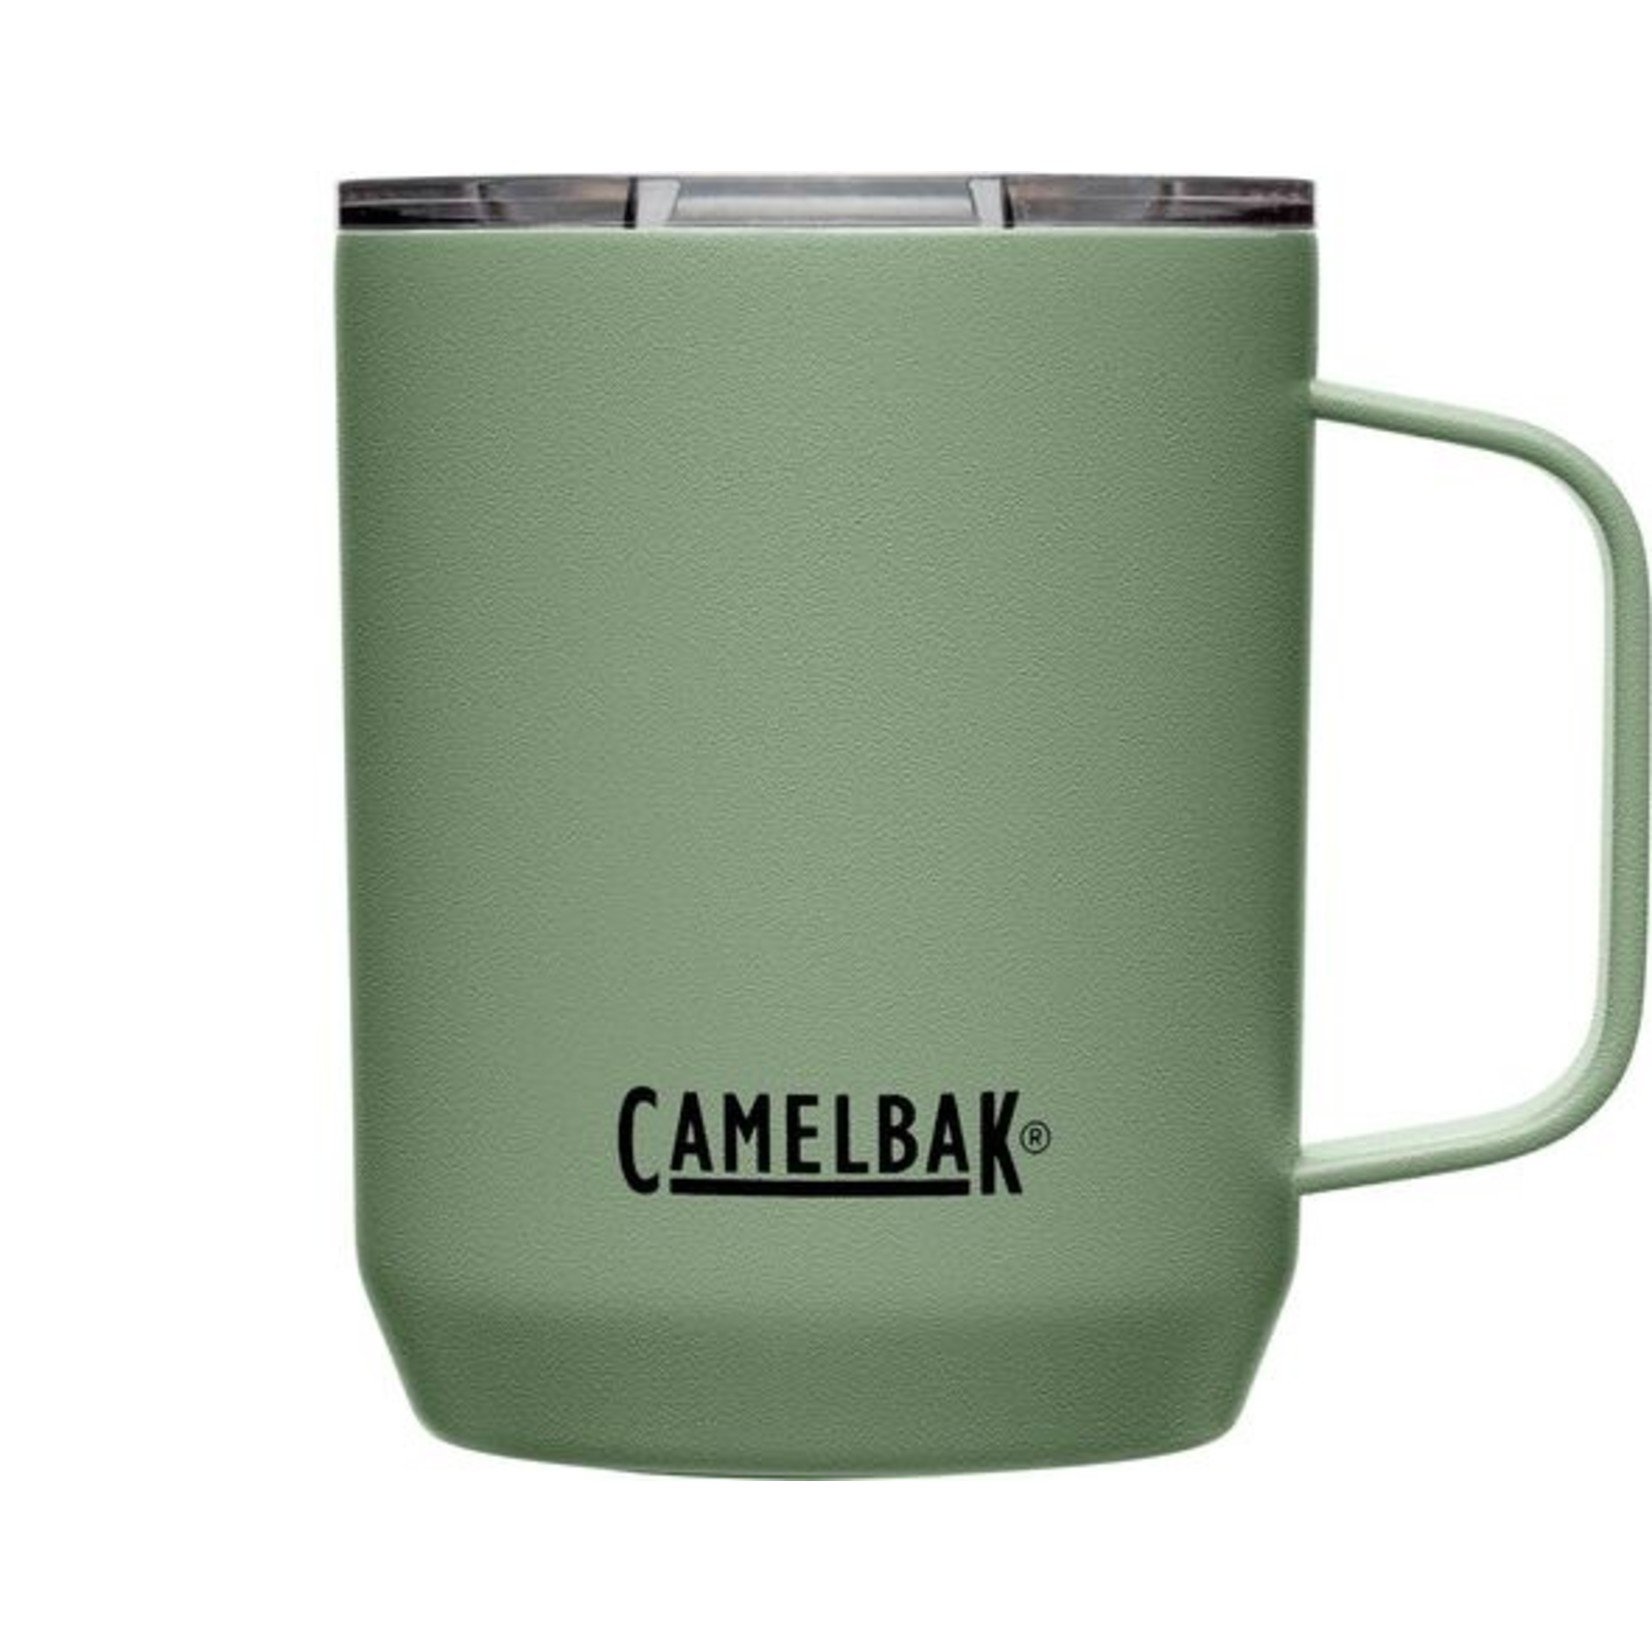 CamelBak Black Camp Mug 12 oz